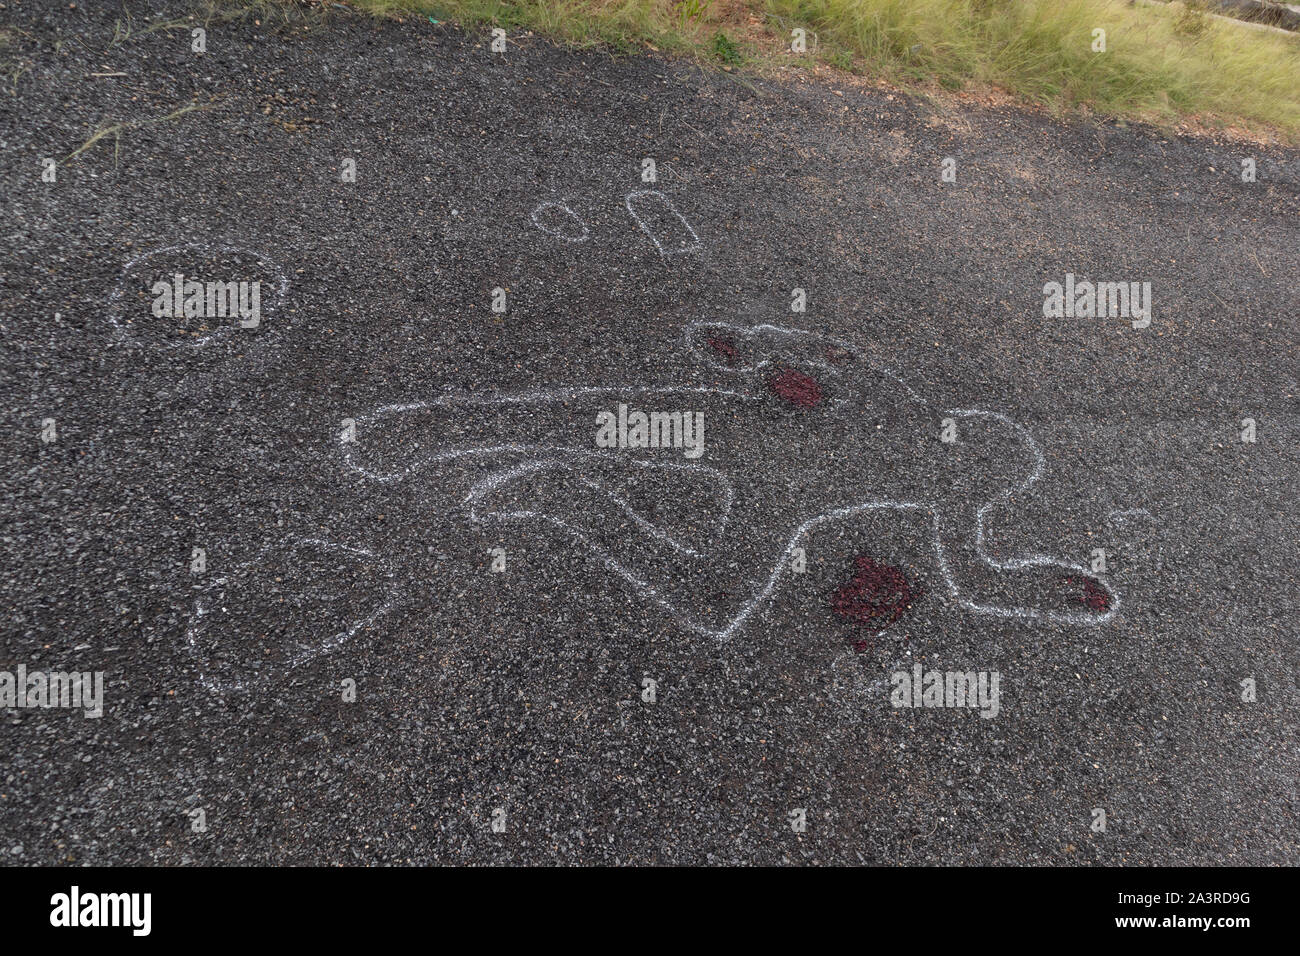 Aperçu de la craie de scène de crime victime corps mort sur route avec le sang, Concept de l'enquête pour meurtre Banque D'Images